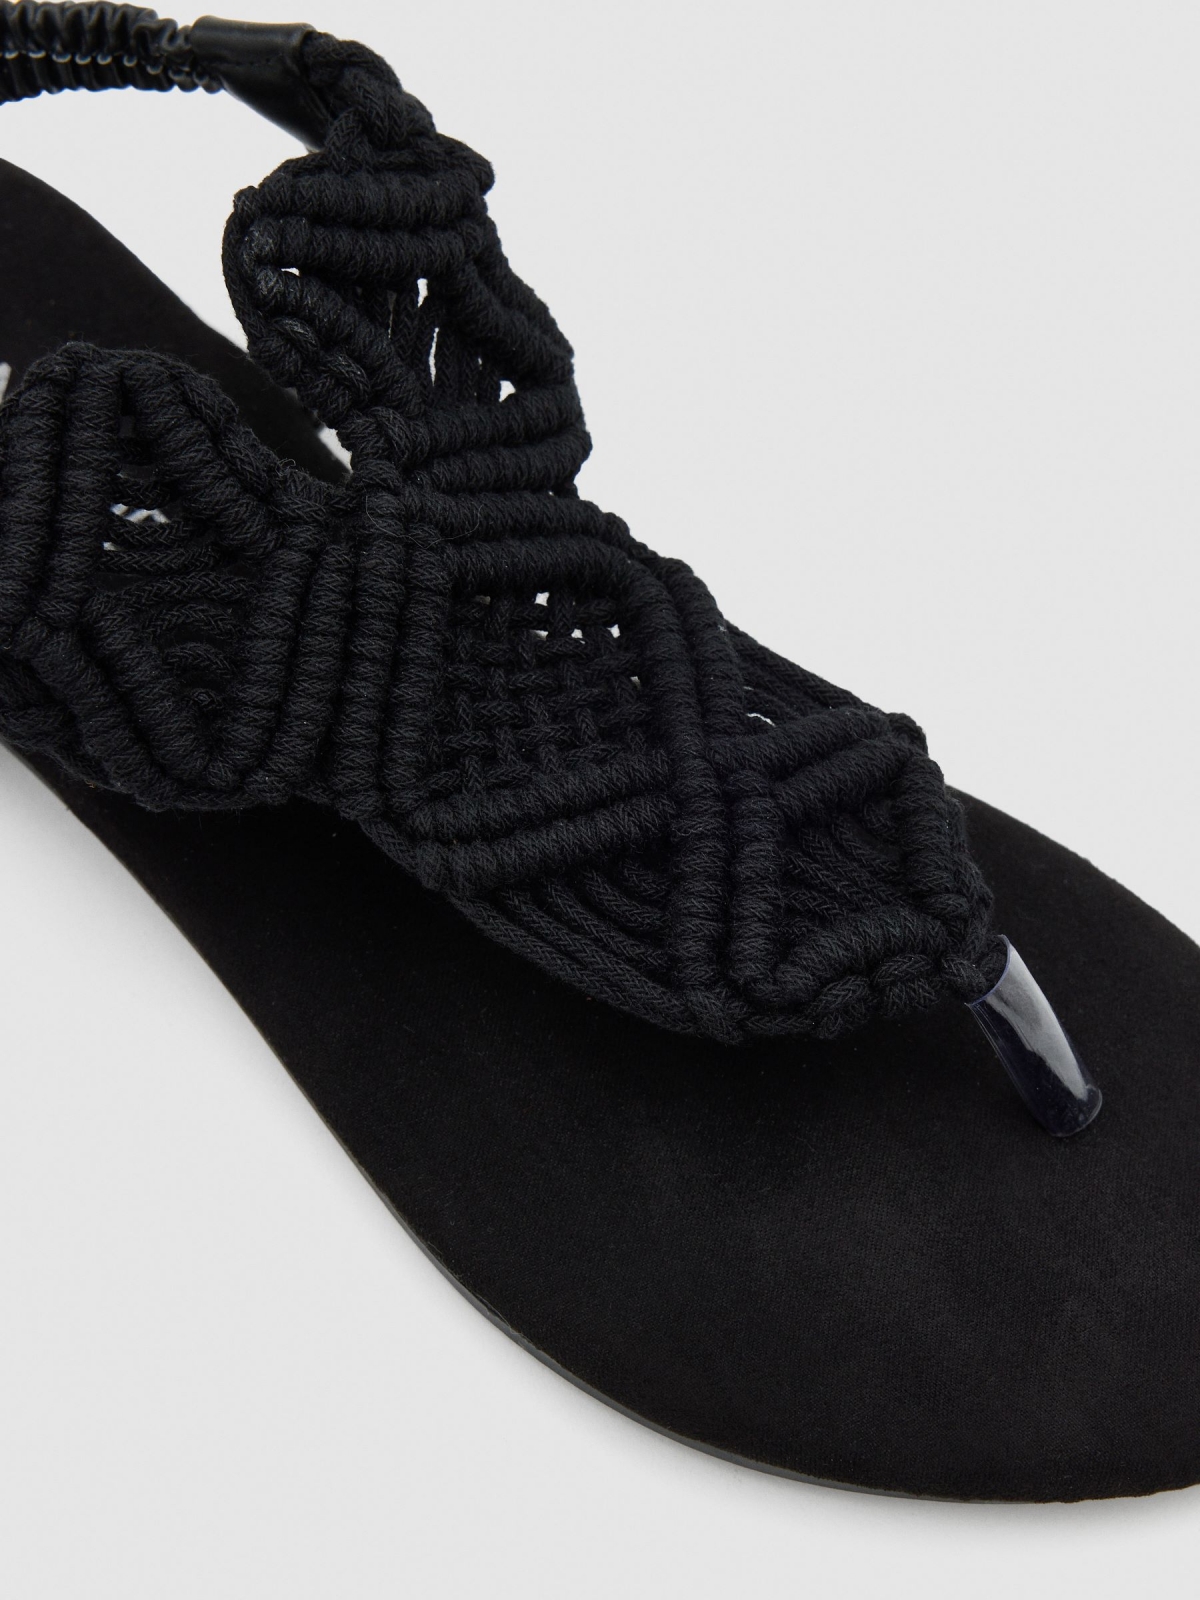 Black macramé sandal black detail view